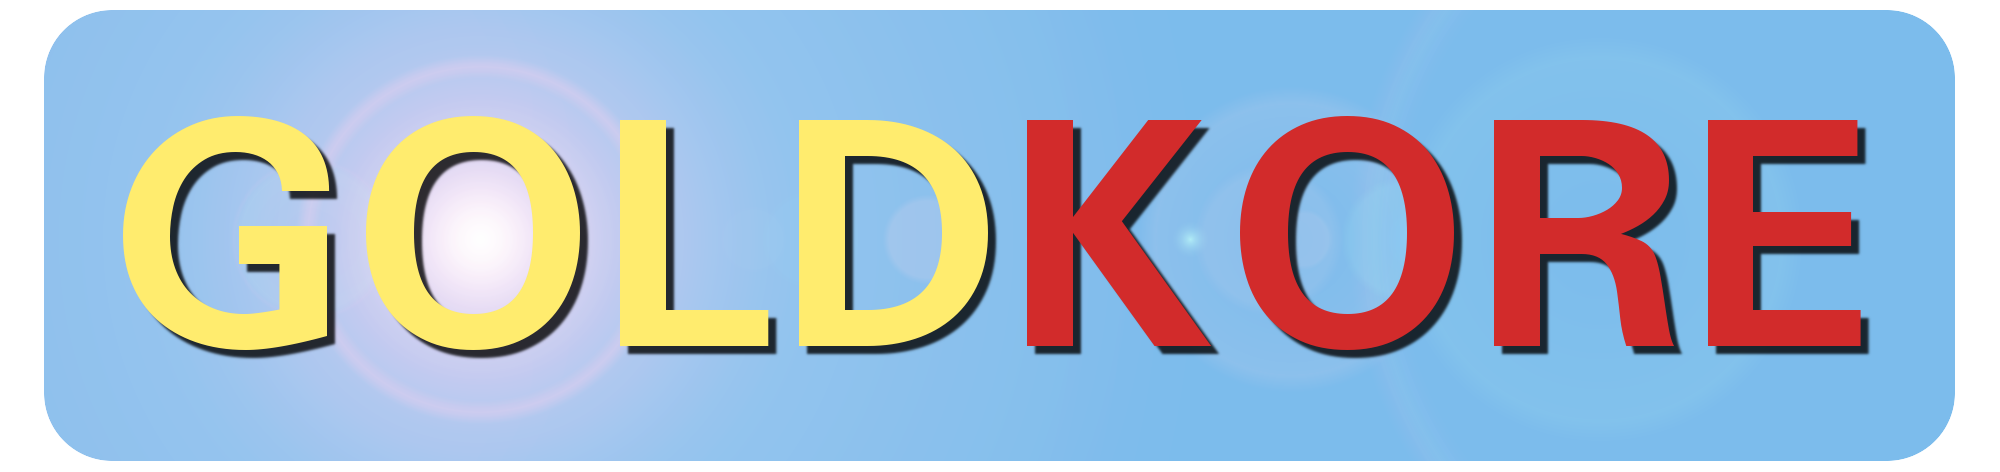 Logo GOLDKORE 2000 x 472 Pixel / PNG Format